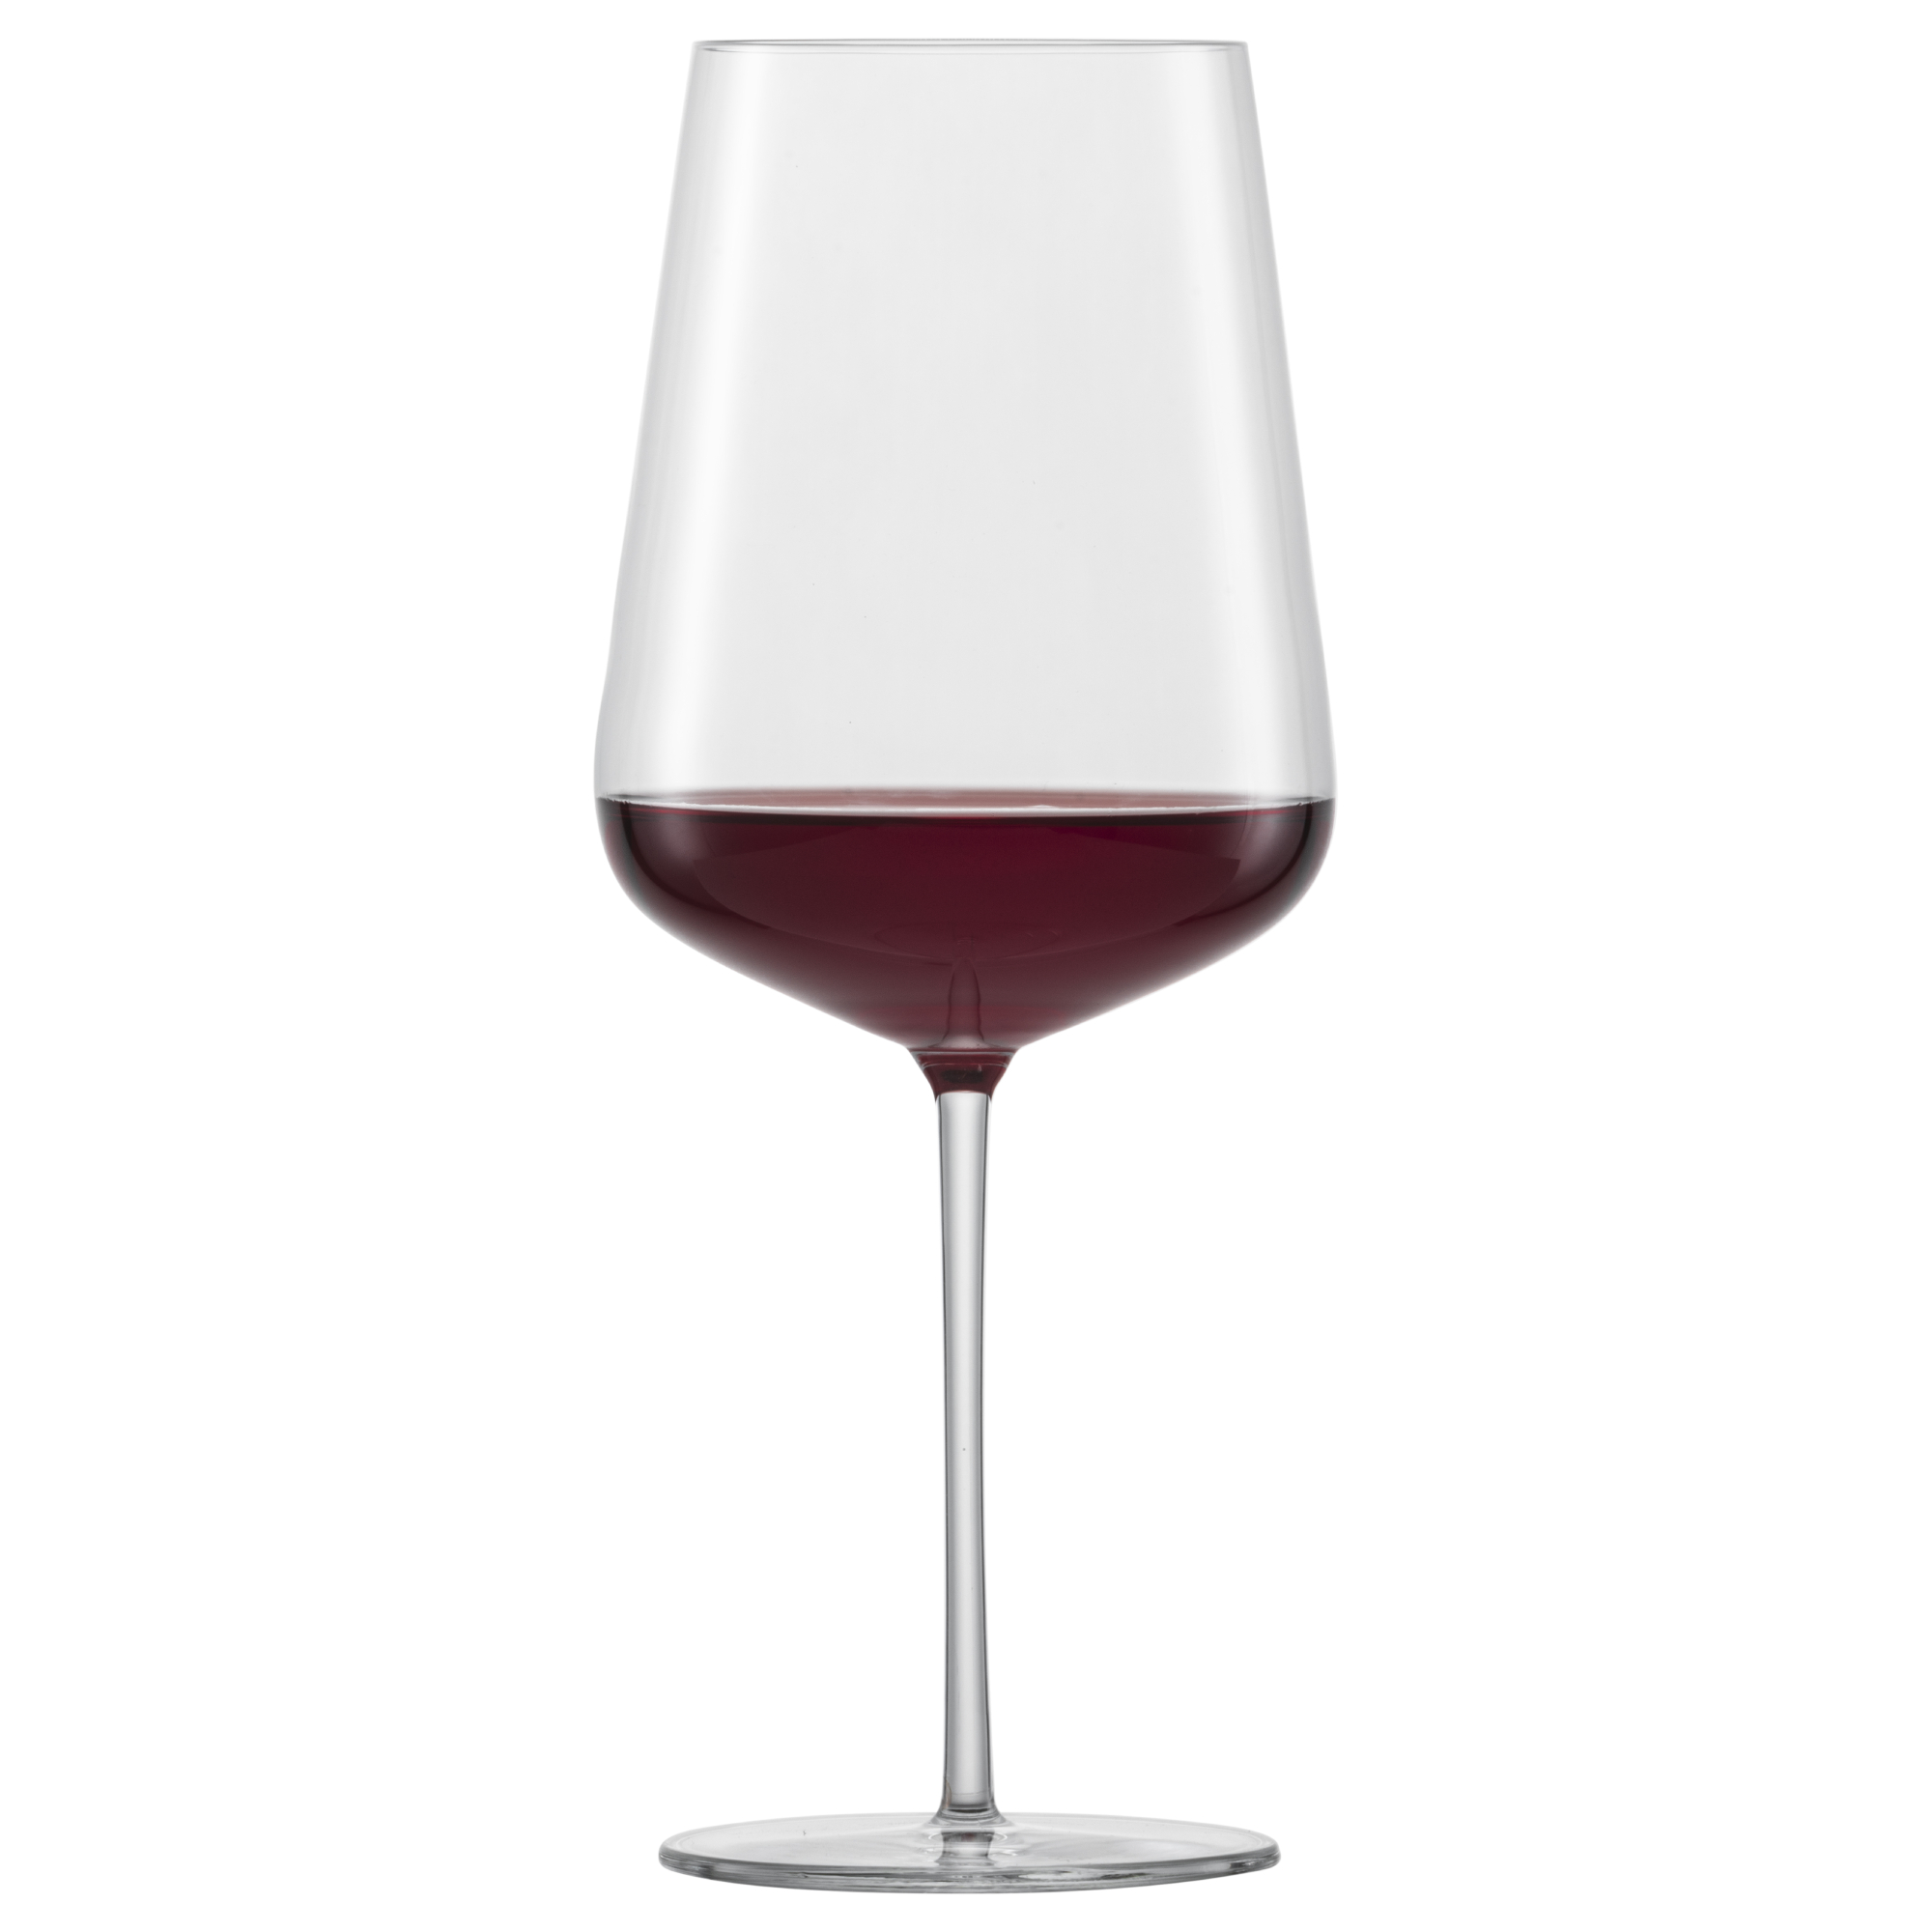 Набор бокалов для красного вина Schott Zwiesel Vervino 742 мл 2 шт набор из 6 бокалов для красного вина 770 мл schott zwiesel diva арт 104 102 6